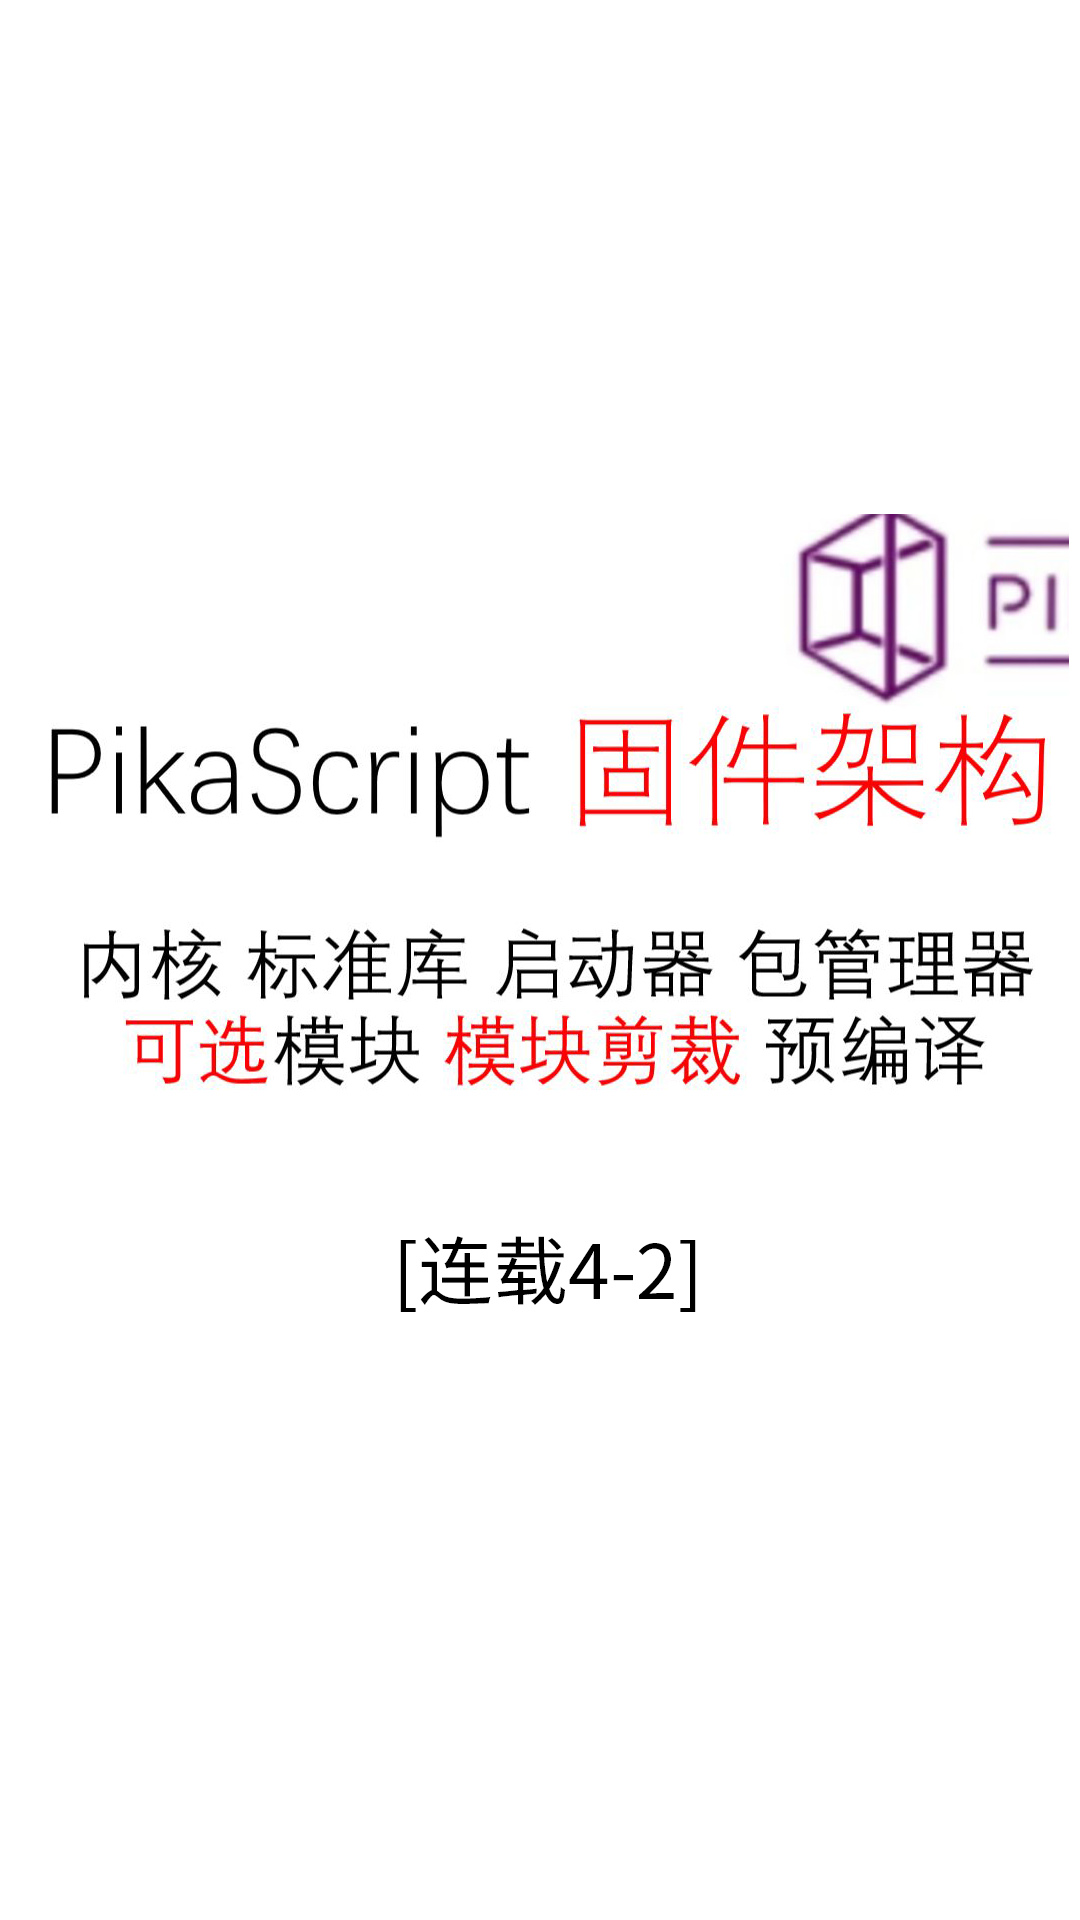 【连载04-2】固件架构--#Pika派开发板 手把手单片机python编程